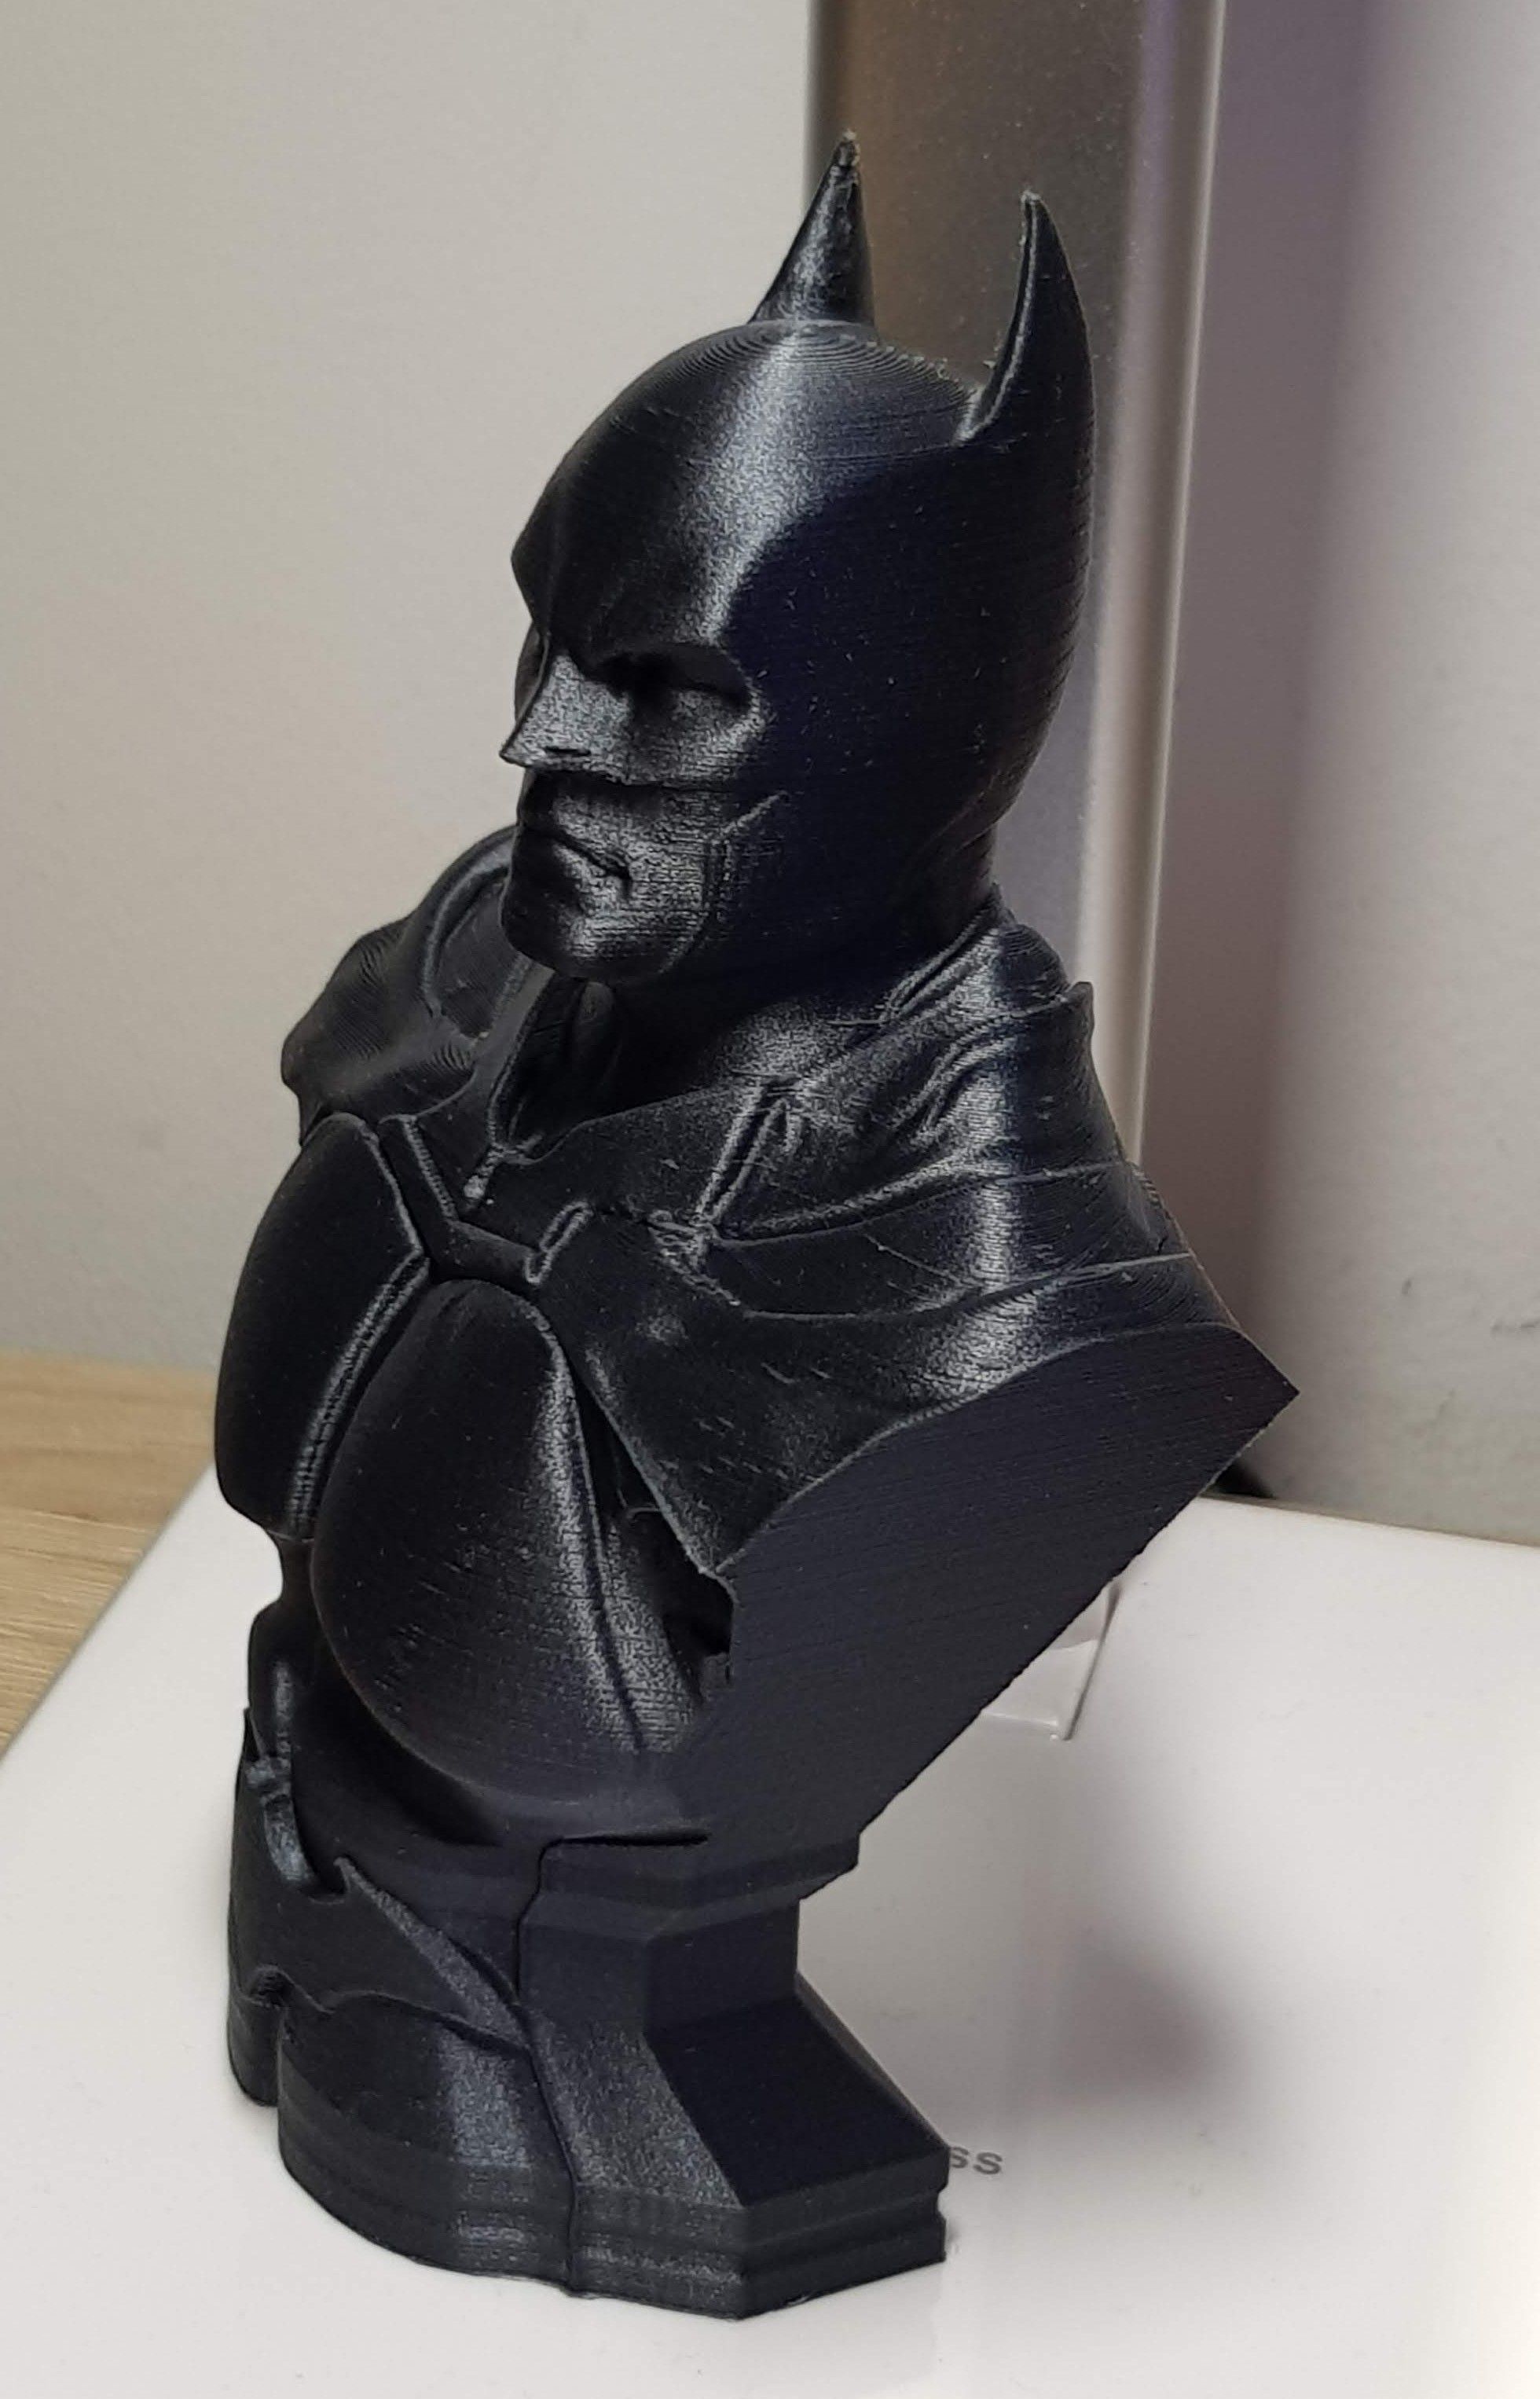 Un nouveau buste de batman arkham, Ratatong